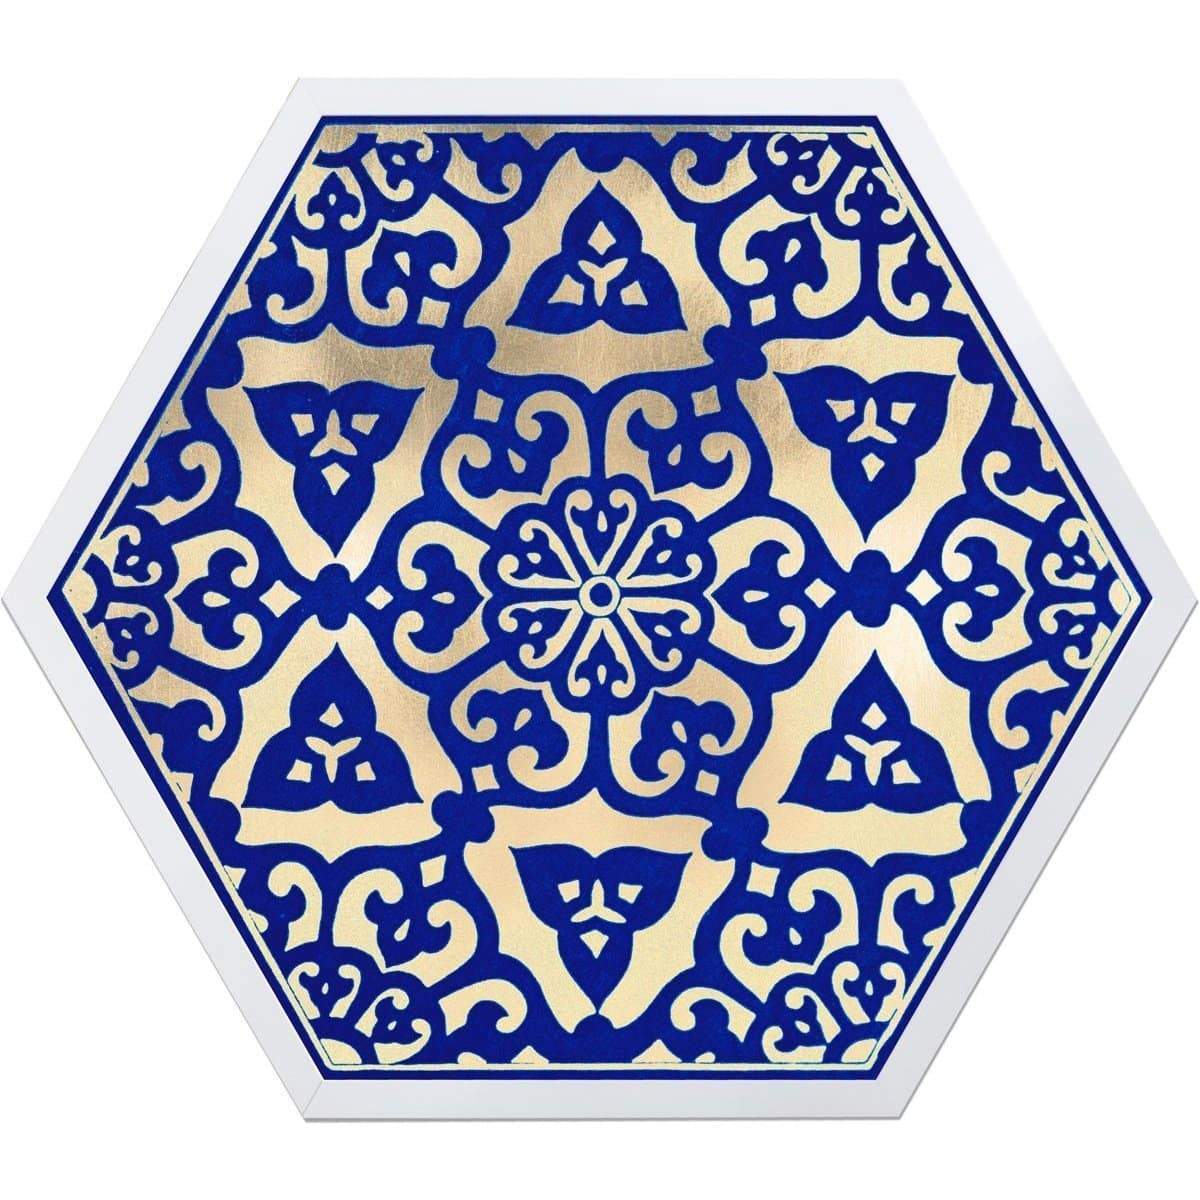 Natural Curiosities Hexagon Moroccan Tile Design No. 1-4 Wall natural-curiosities-hexagon-moroccan-tile-design-4